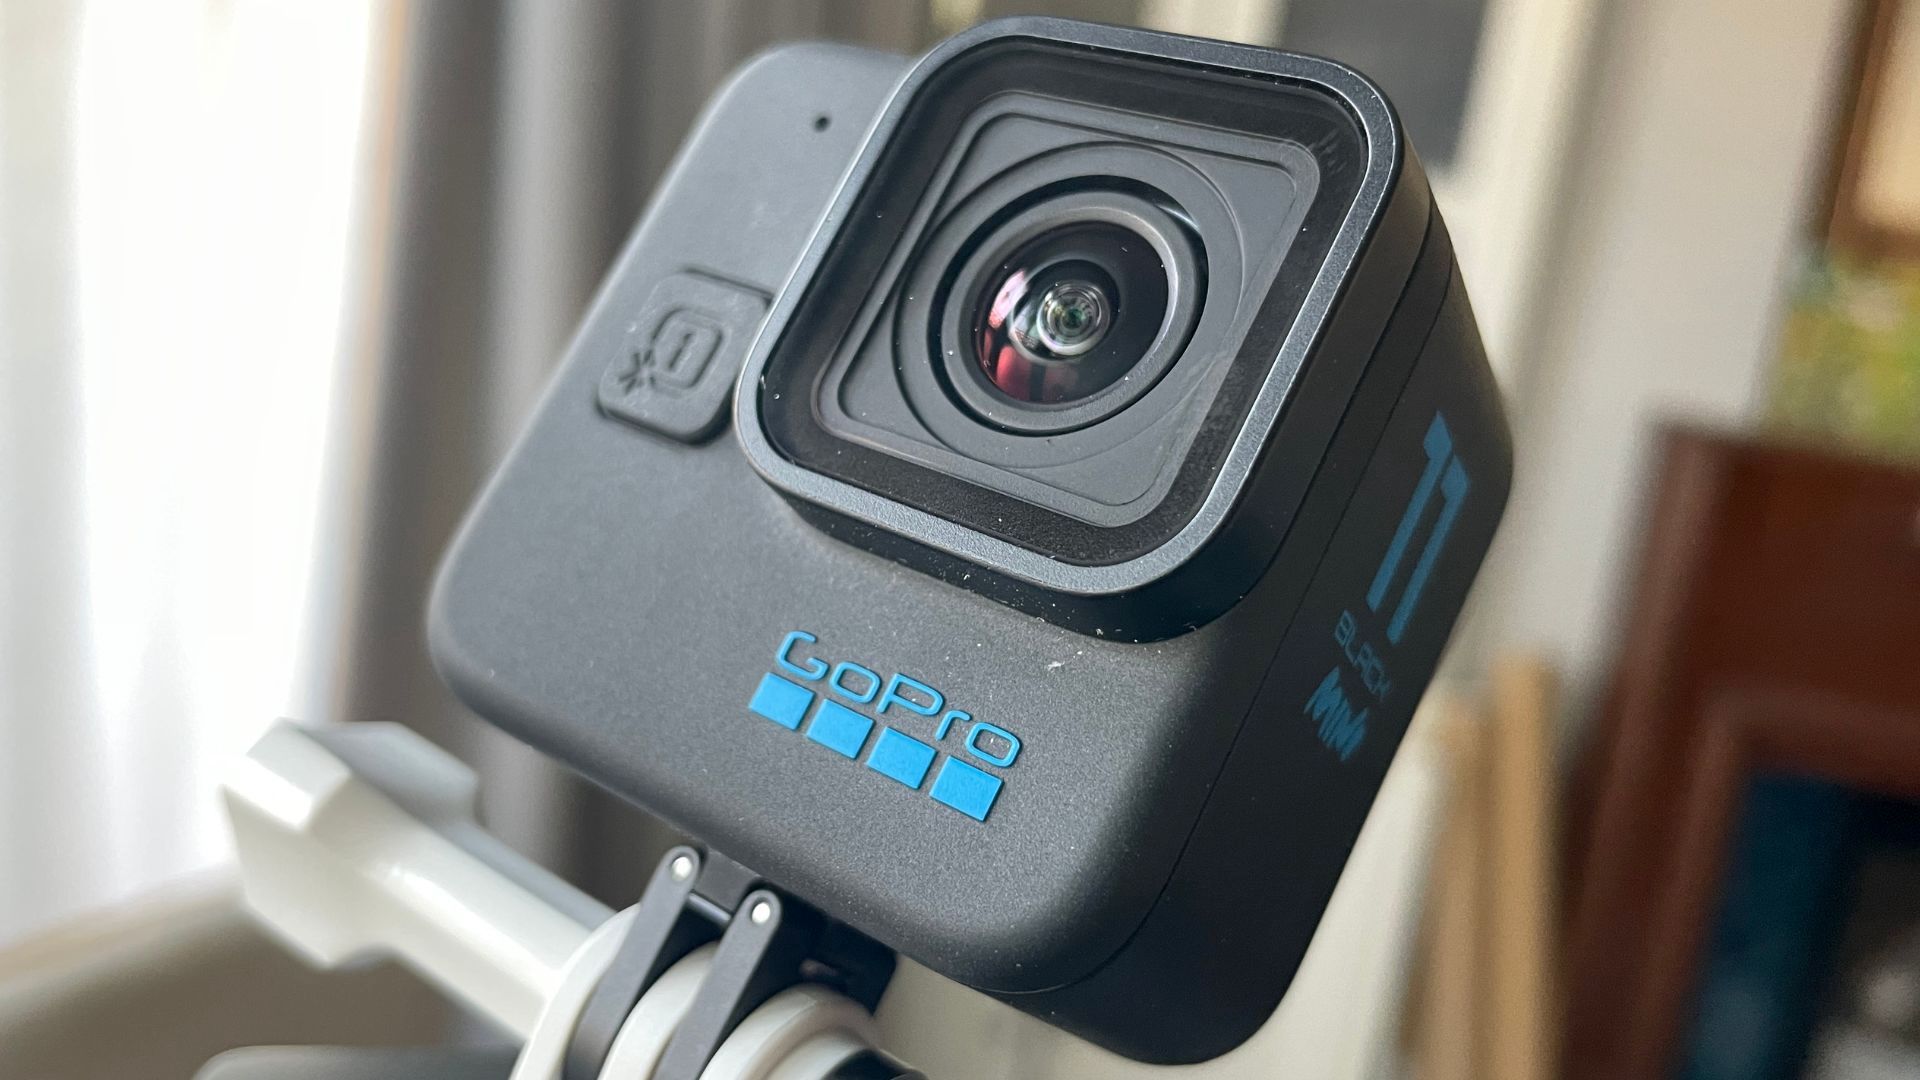 GoPro Hero11 Black Mini Review